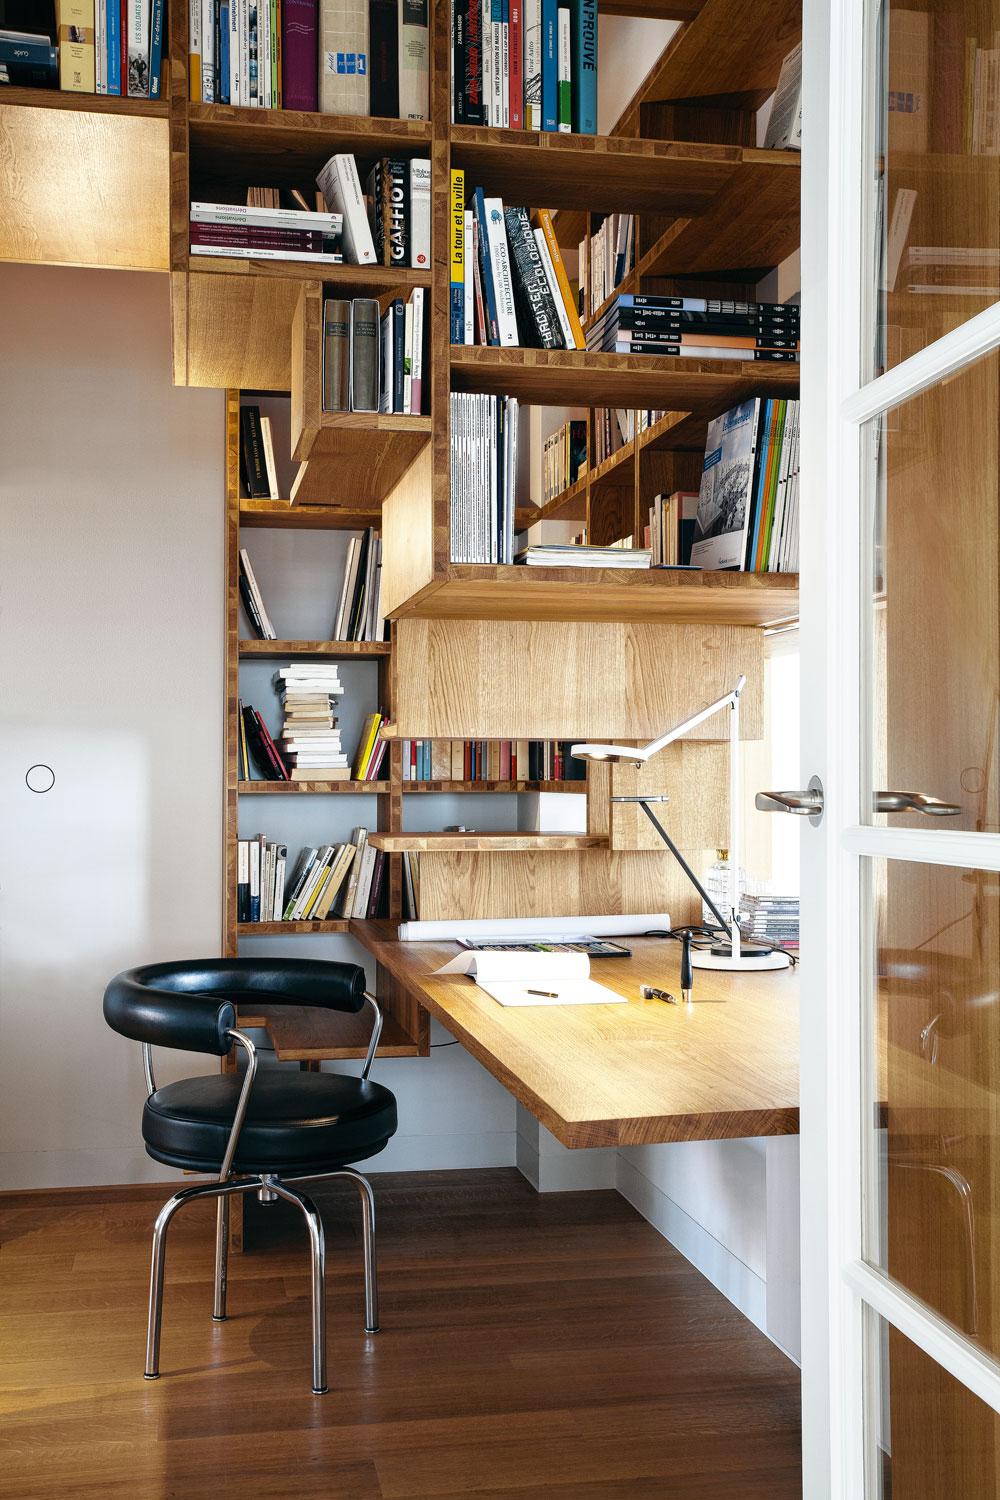 Ce bureau-escalier-bibliothèque est un véritable casse-tête constructif qui démontre le talent du concepteur.